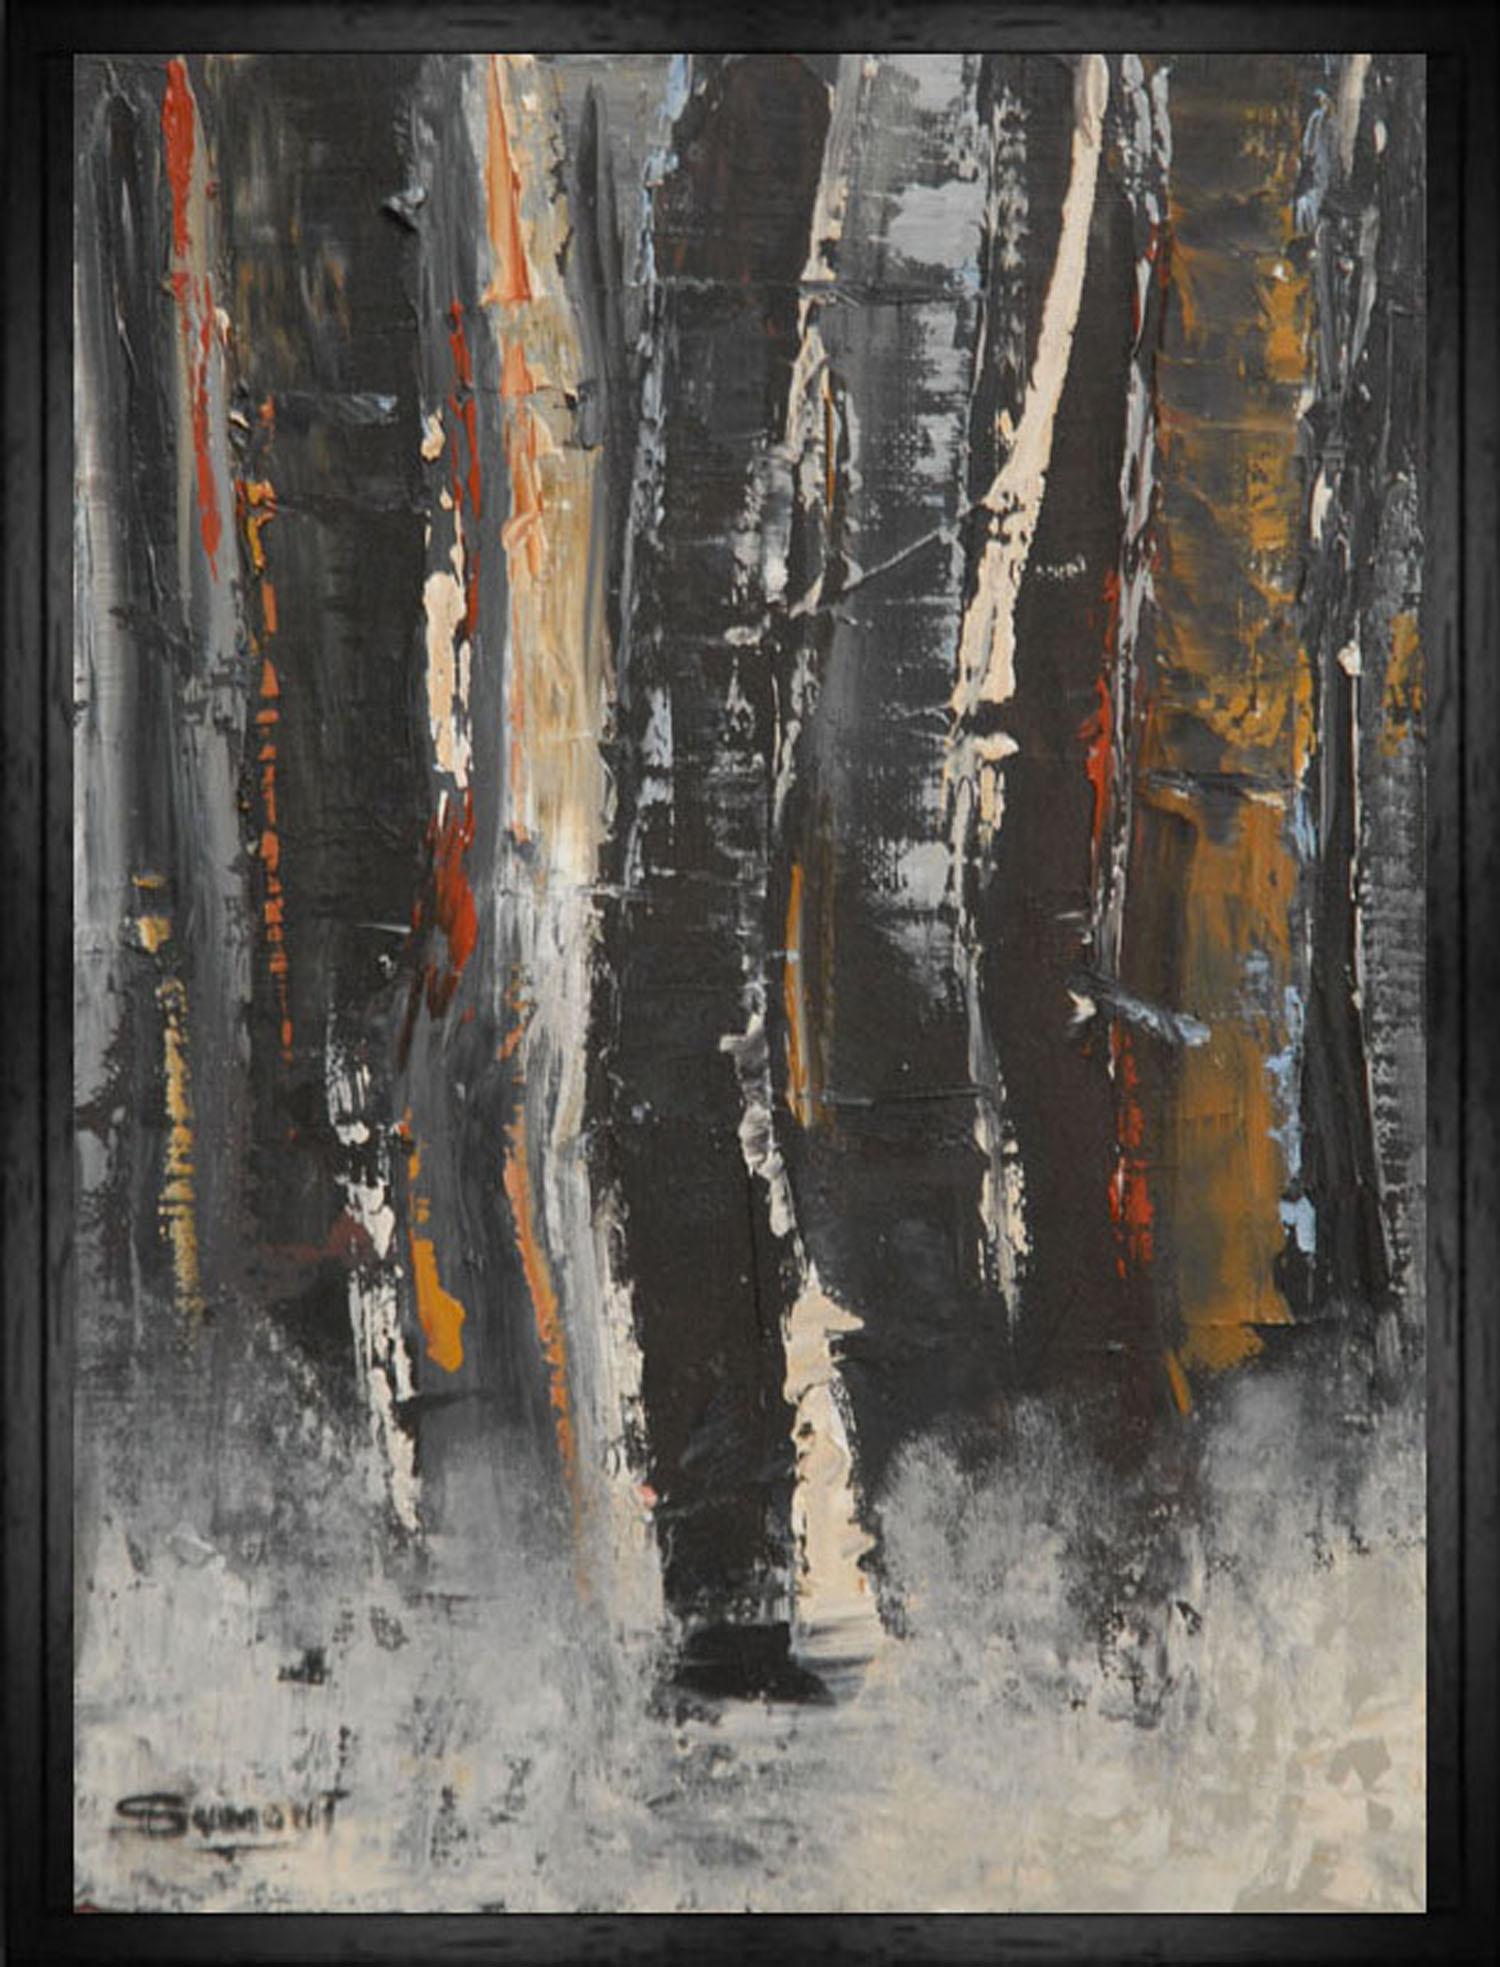 Landscape Painting SOPHIE DUMONT - Forêt d'hiver, arbres noirs, huile sur toile, expressionnisme abstrait, contemporain